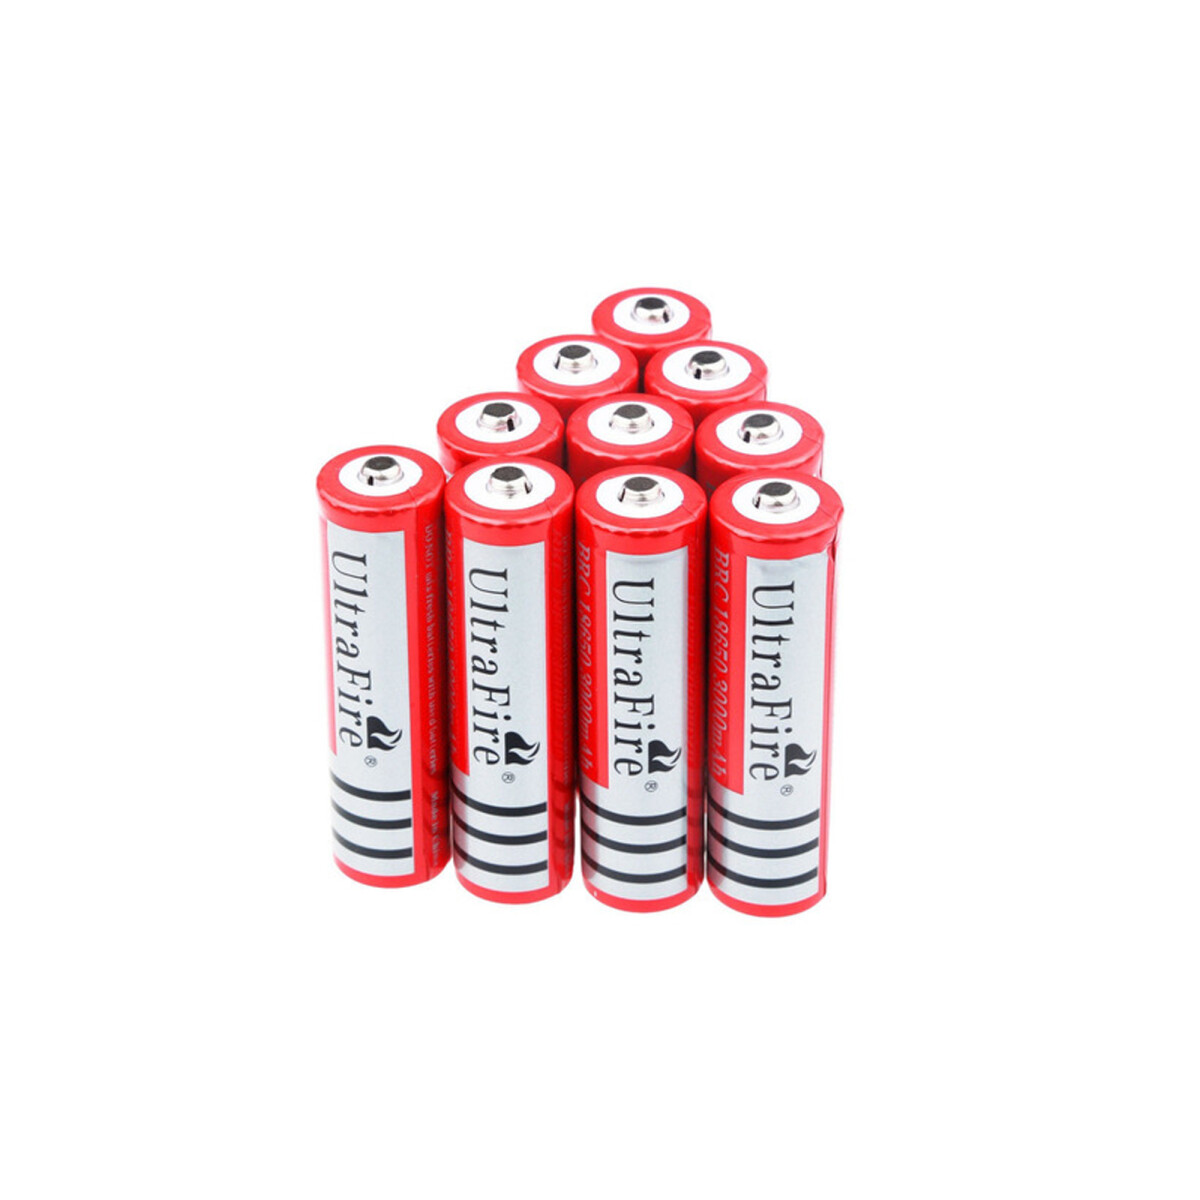 Pack de 10 baterías CR123A 